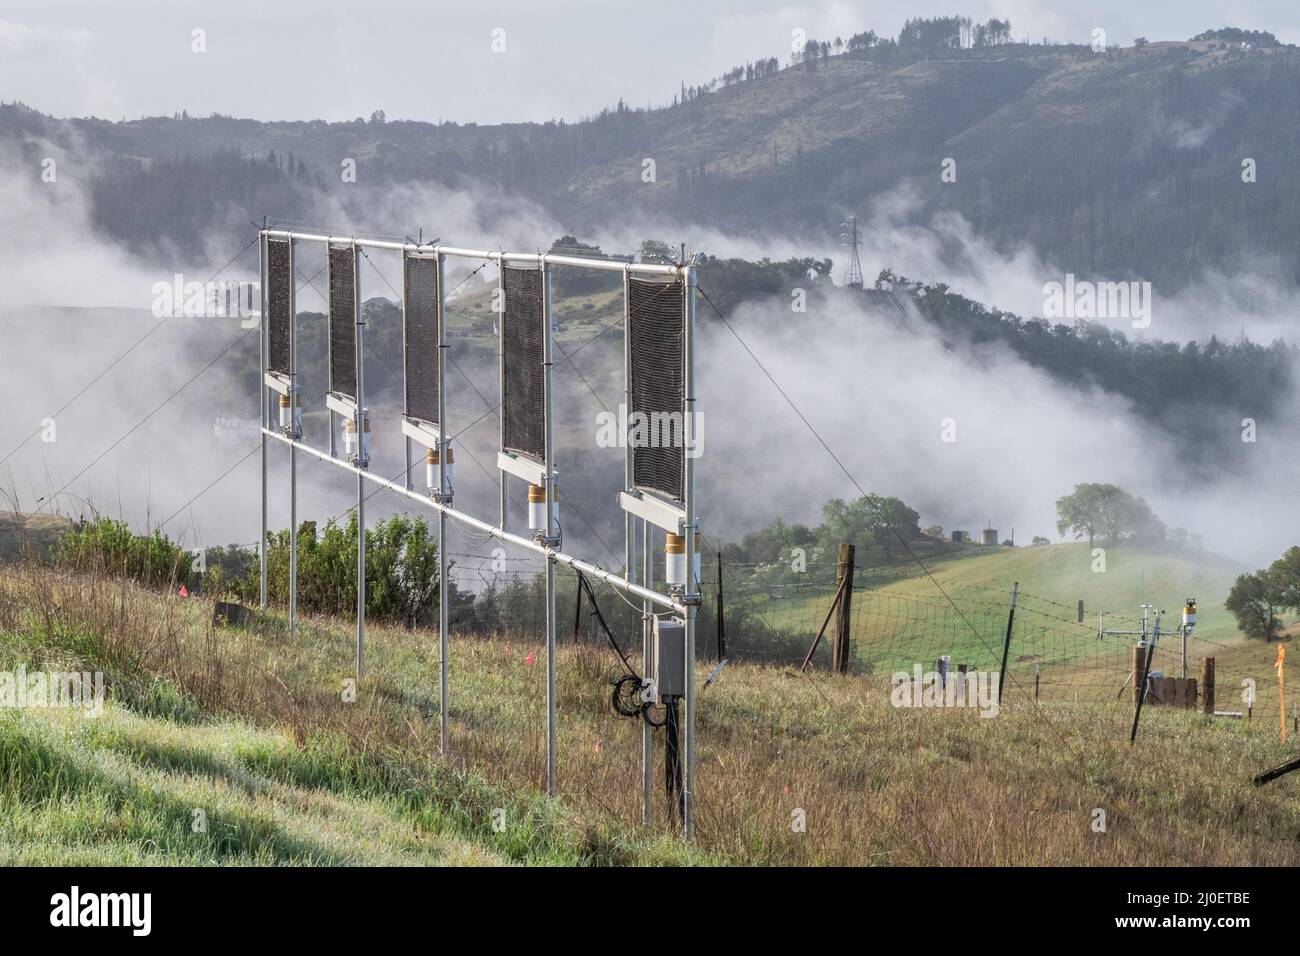 Ein Nebelfänger steht auf einem Hügel in Kalifornien, während sich Wolken und Nebel einziehen, sammeln die Gitterschirme Kondenswasser aus den vorbeiziehenden Nebeln. Stockfoto